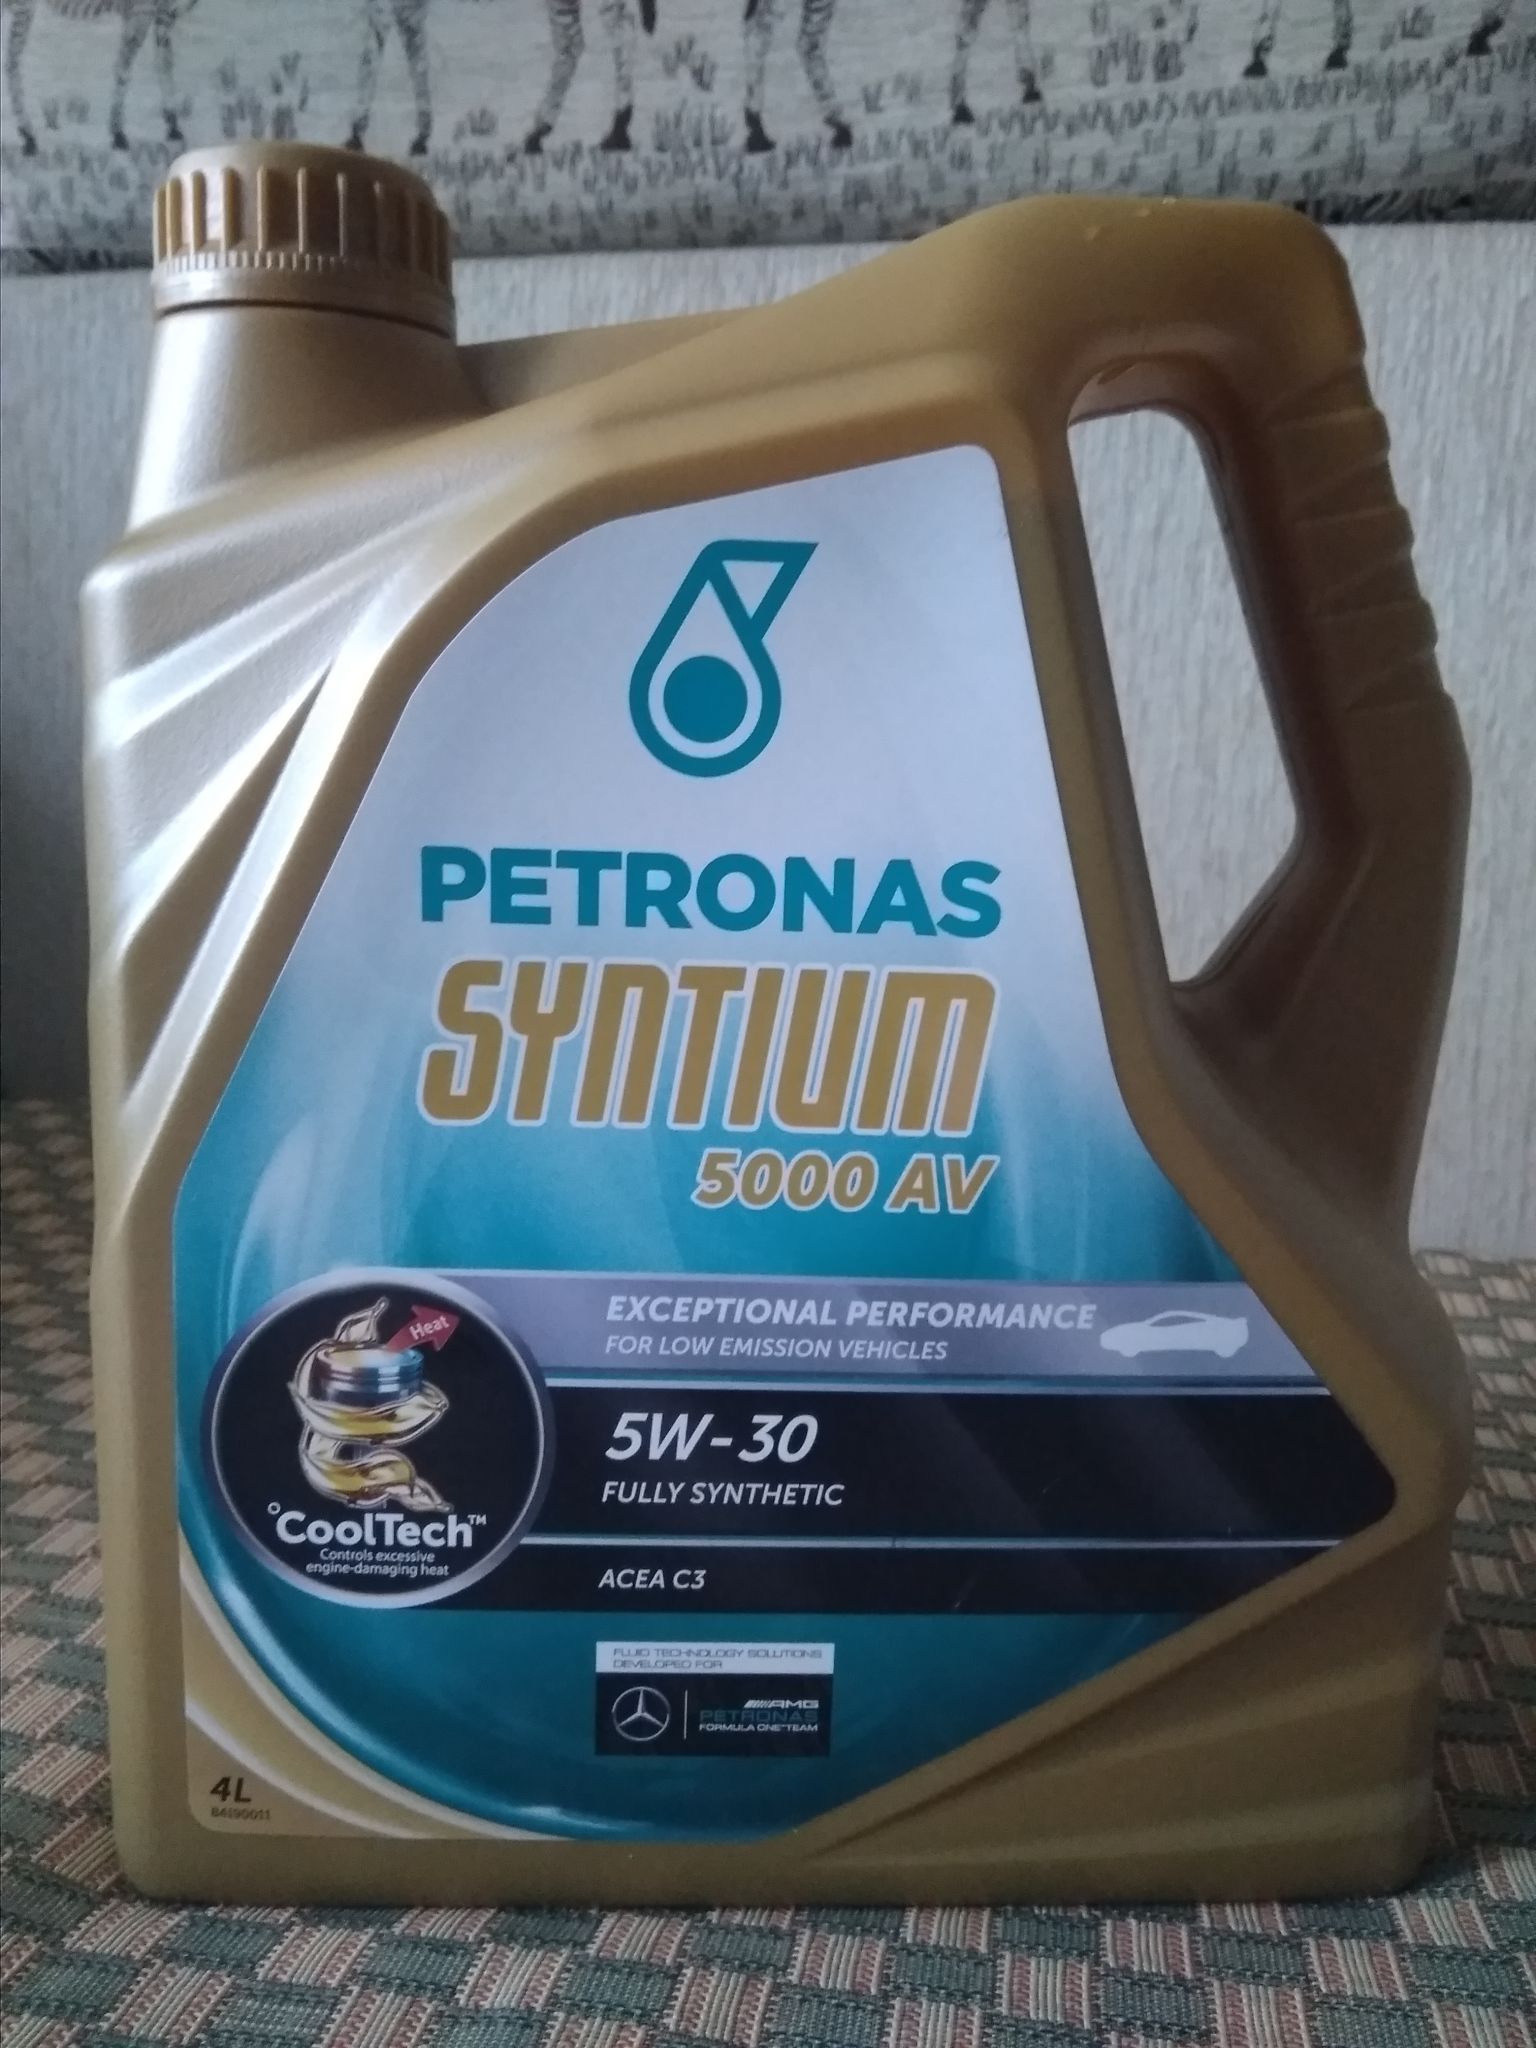 Av 5000. Petronas 5000 av 5w30. Petronas Syntium 5000 5w30. Petronas Syntium 5000 av 5w-30. Petronas Syntium 5000 XS 5w30.